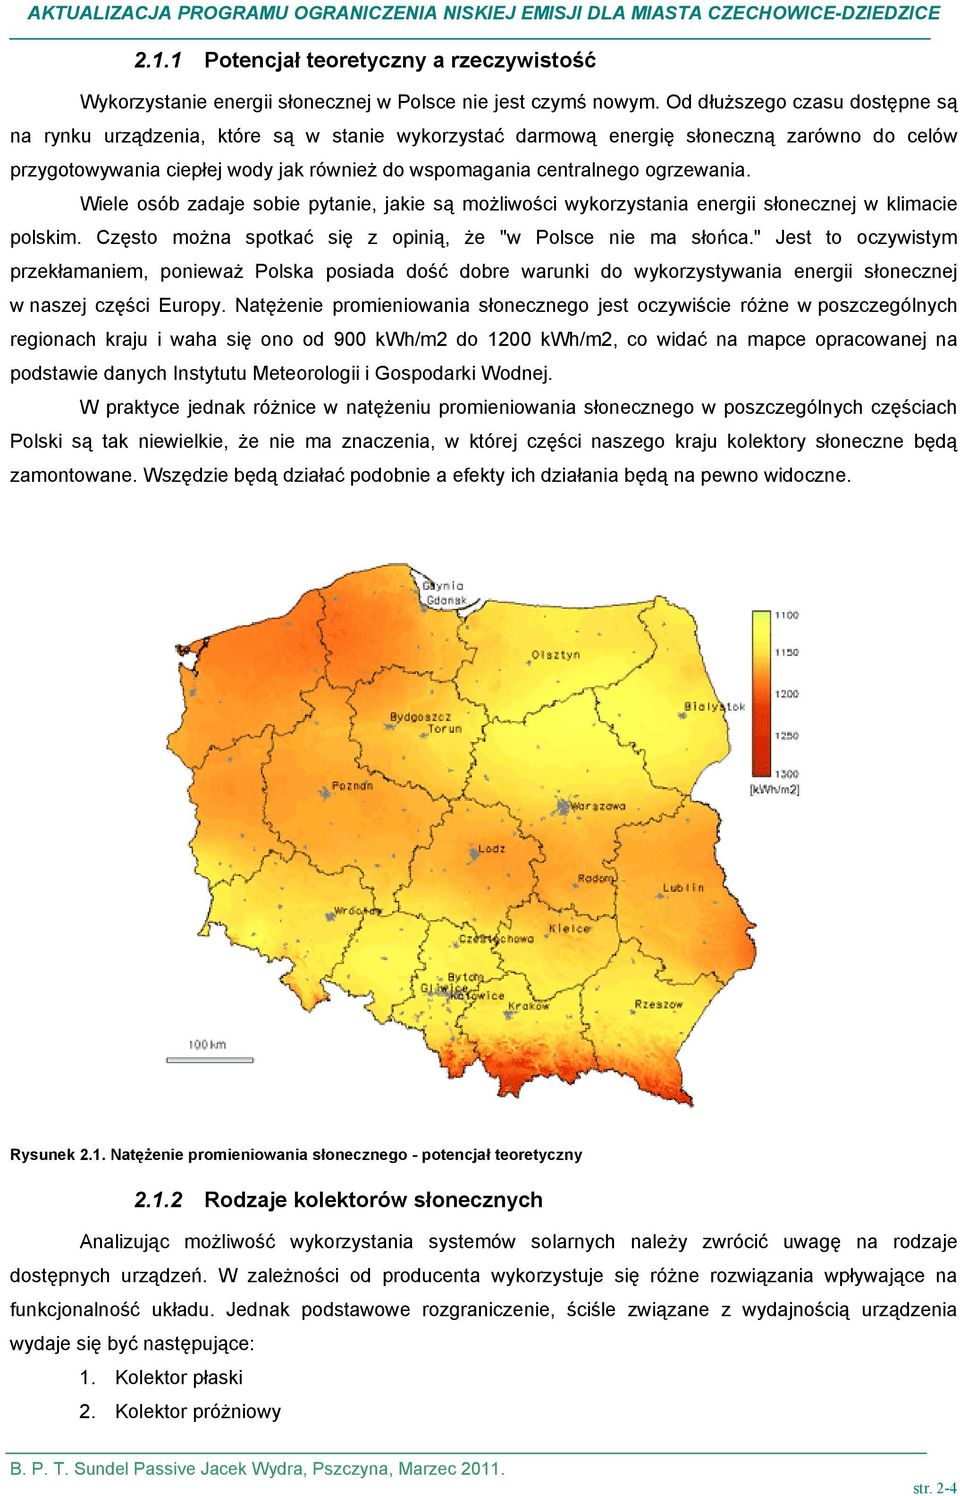 ogrzewania. Wiele osób zadaje sobie pytanie, jakie są możliwości wykorzystania energii słonecznej w klimacie polskim. zęsto można spotkać się z opinią, że "w Polsce nie ma słońca.